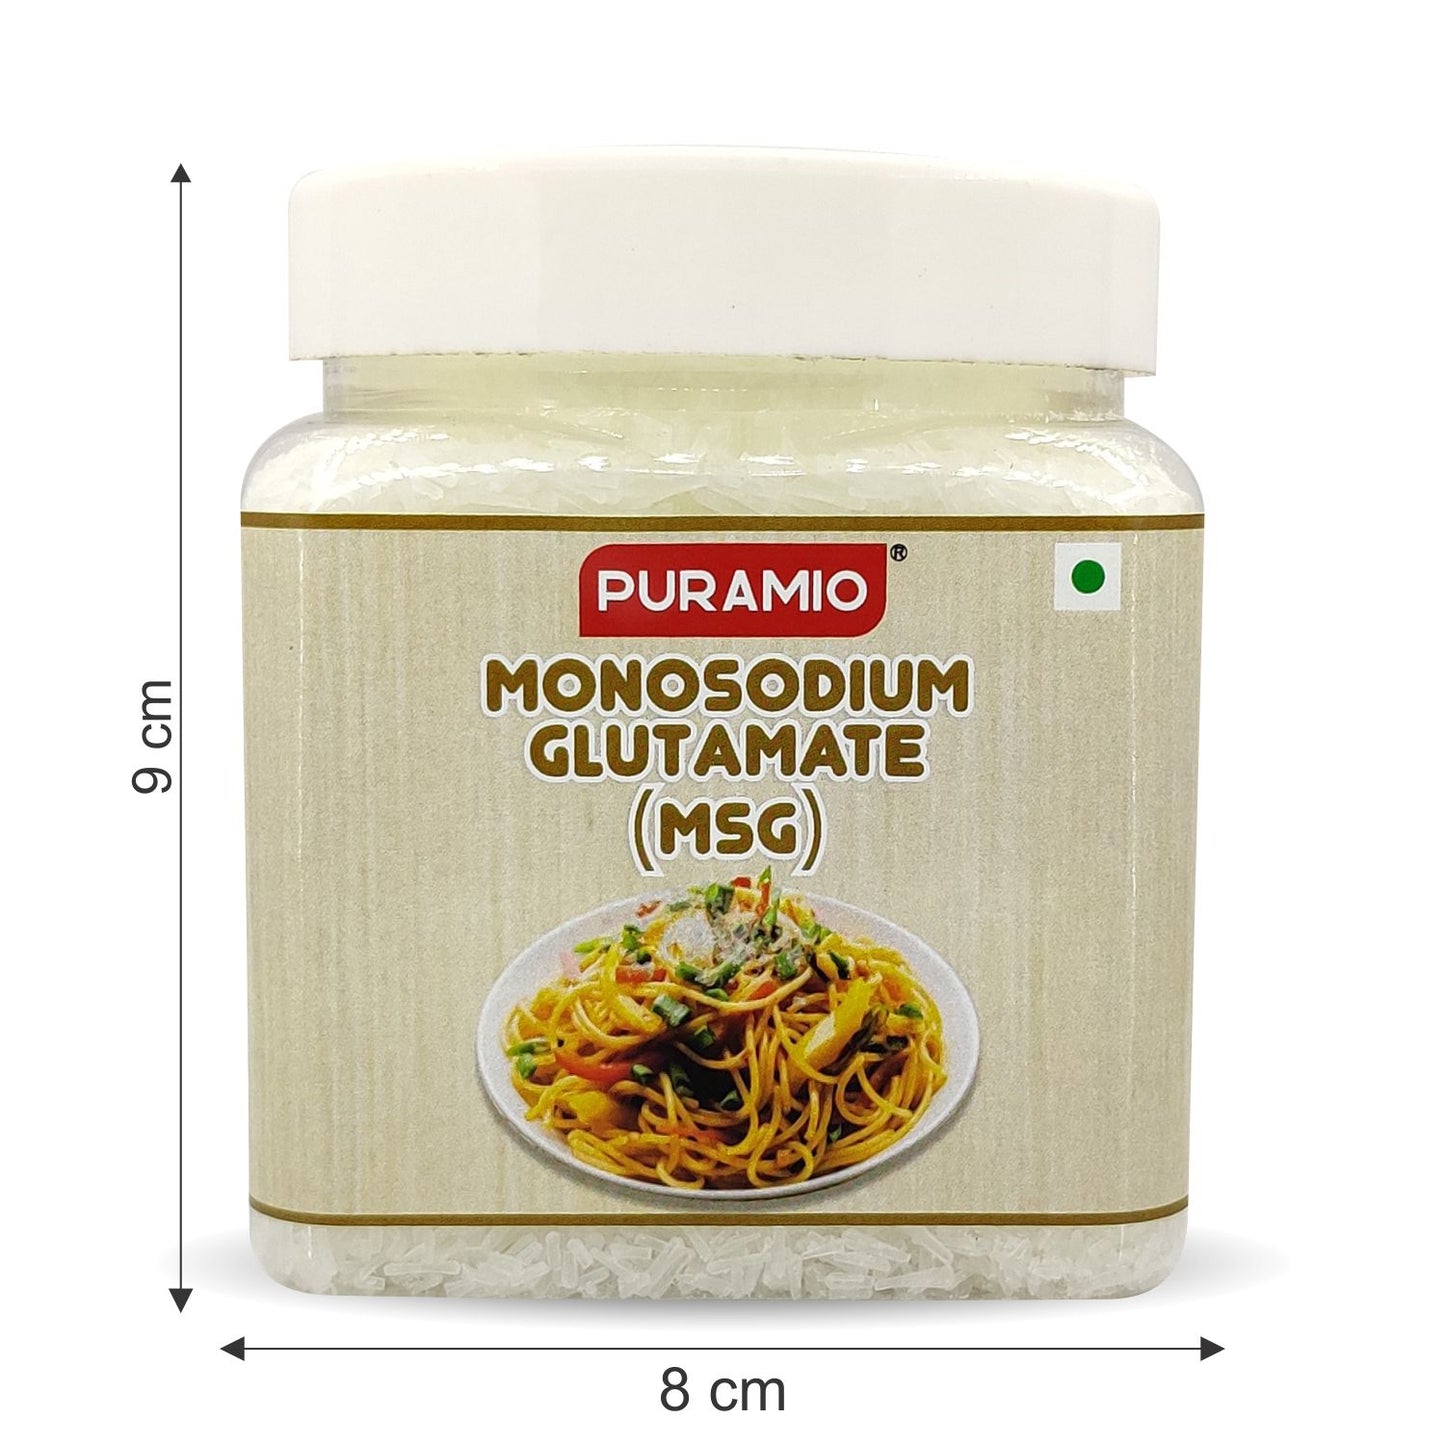 Puramio MONOSODIUM GLUTAMATE (MSG) , 350g